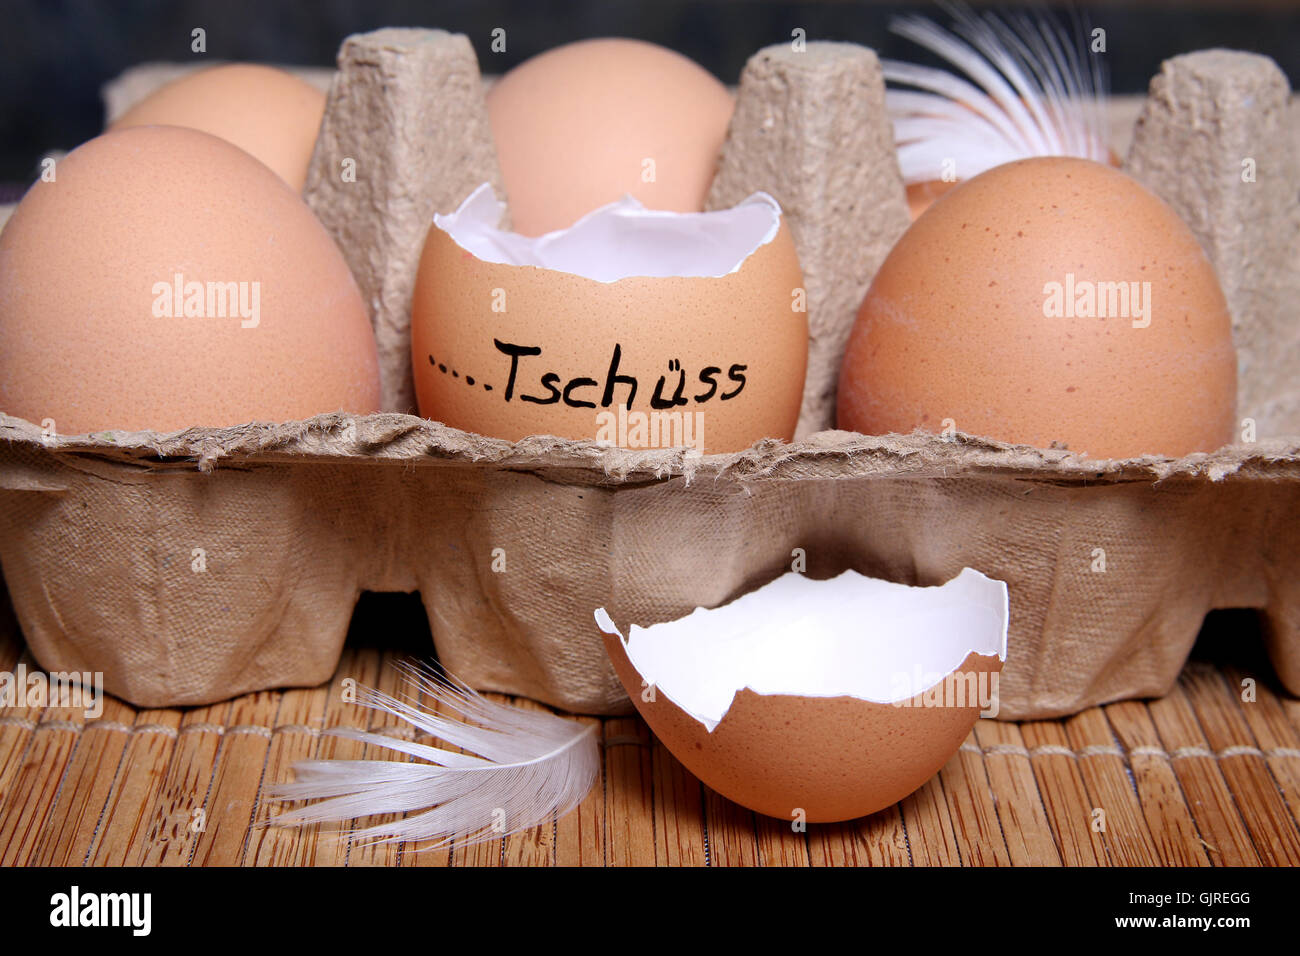 end egg eggshell Stock Photo